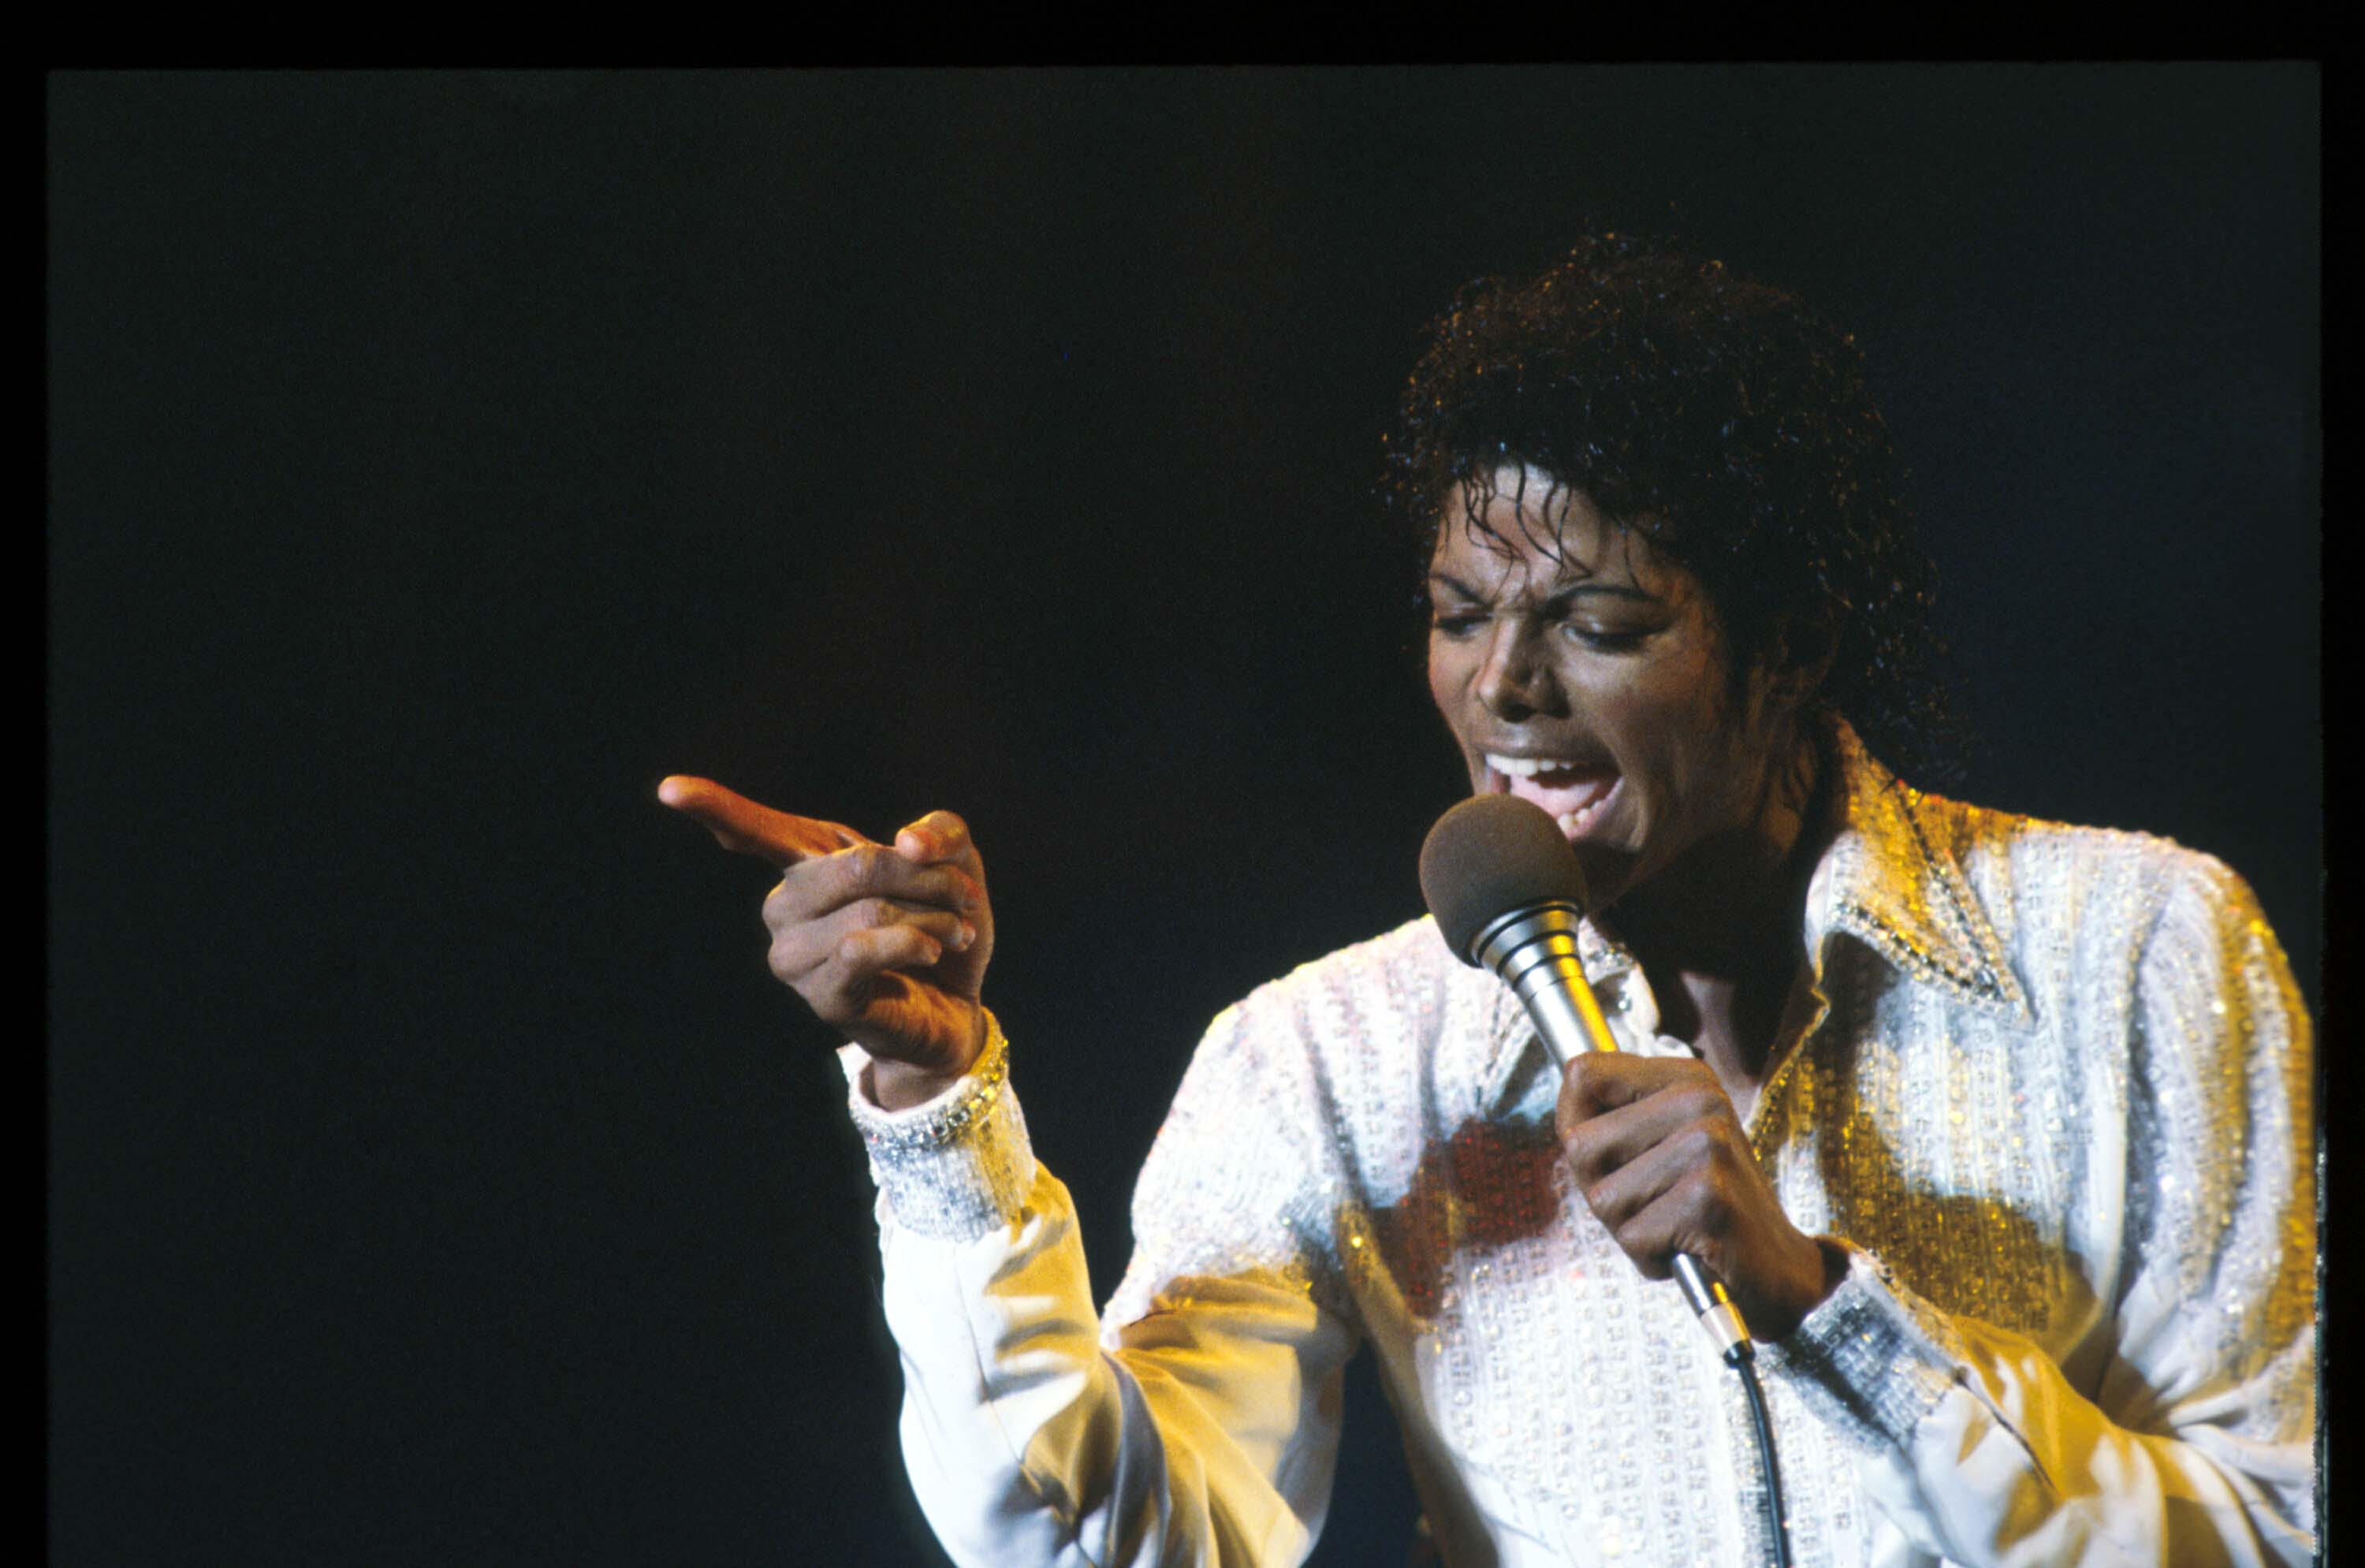 Michael Jackson wearing white